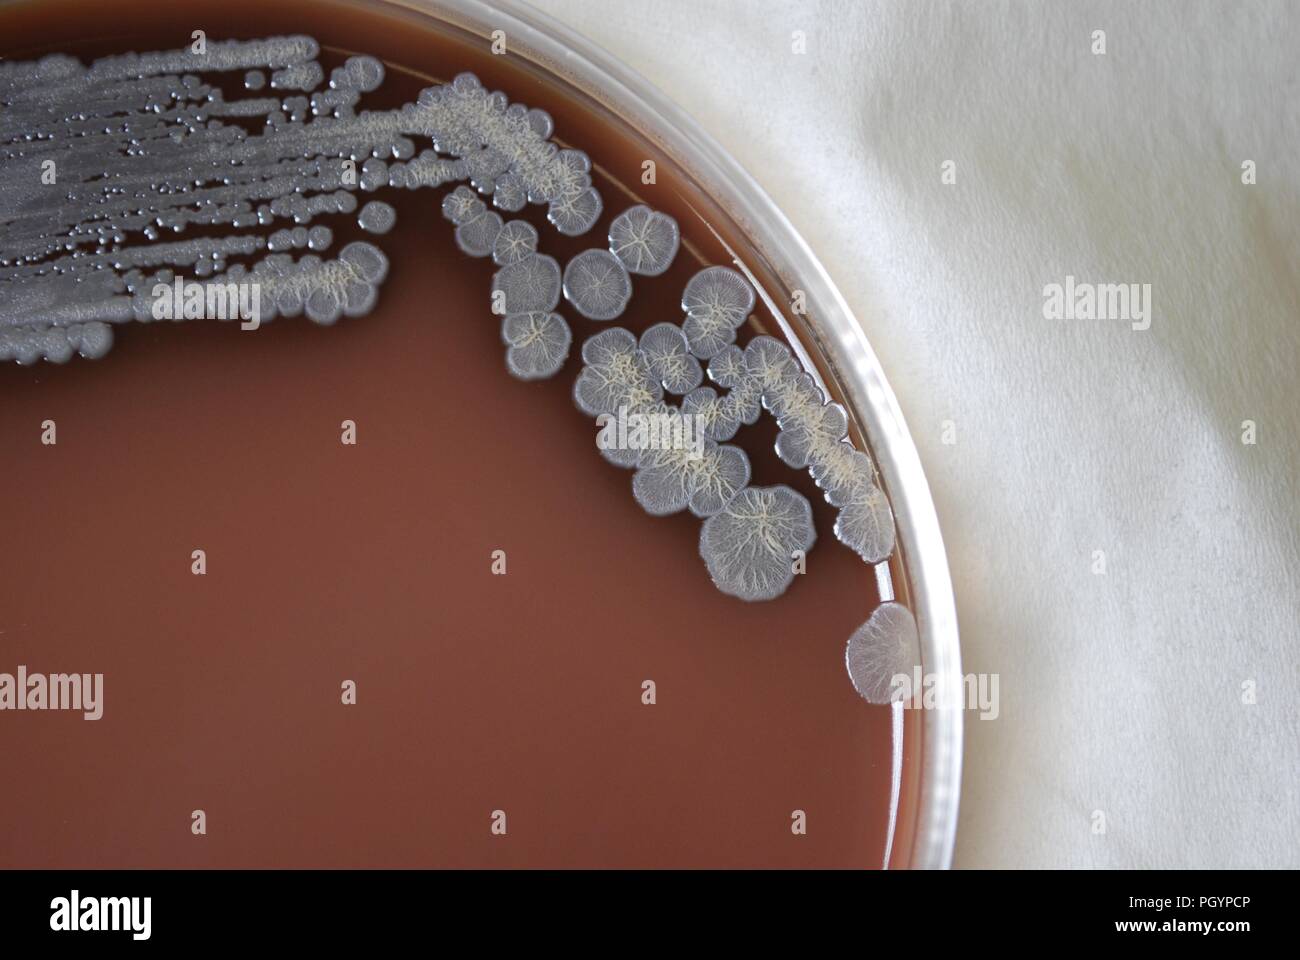 Morfologia coloniale di batteri Gram-negativi Burkholderia pseudomallei batteri cresciuti 72 ore su un terreno di agar cioccolato, 2010. Immagine cortesia di centri per il controllo delle malattie (CDC) / Dr Todd Parker, Audra Marsh. () Foto Stock